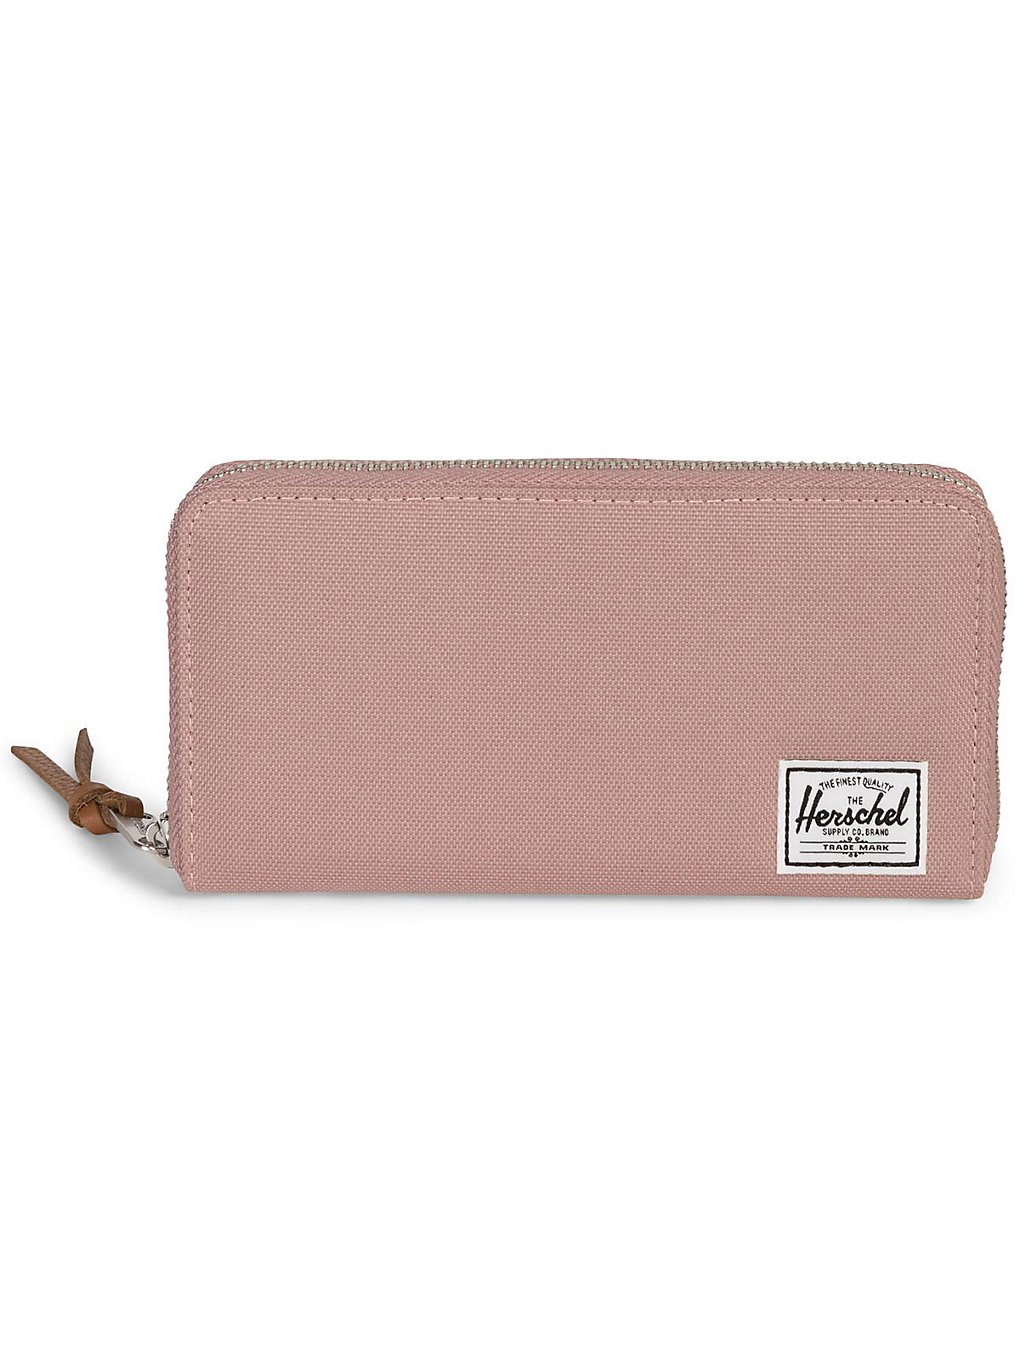 Herschel Thomas RFID Wallet pink